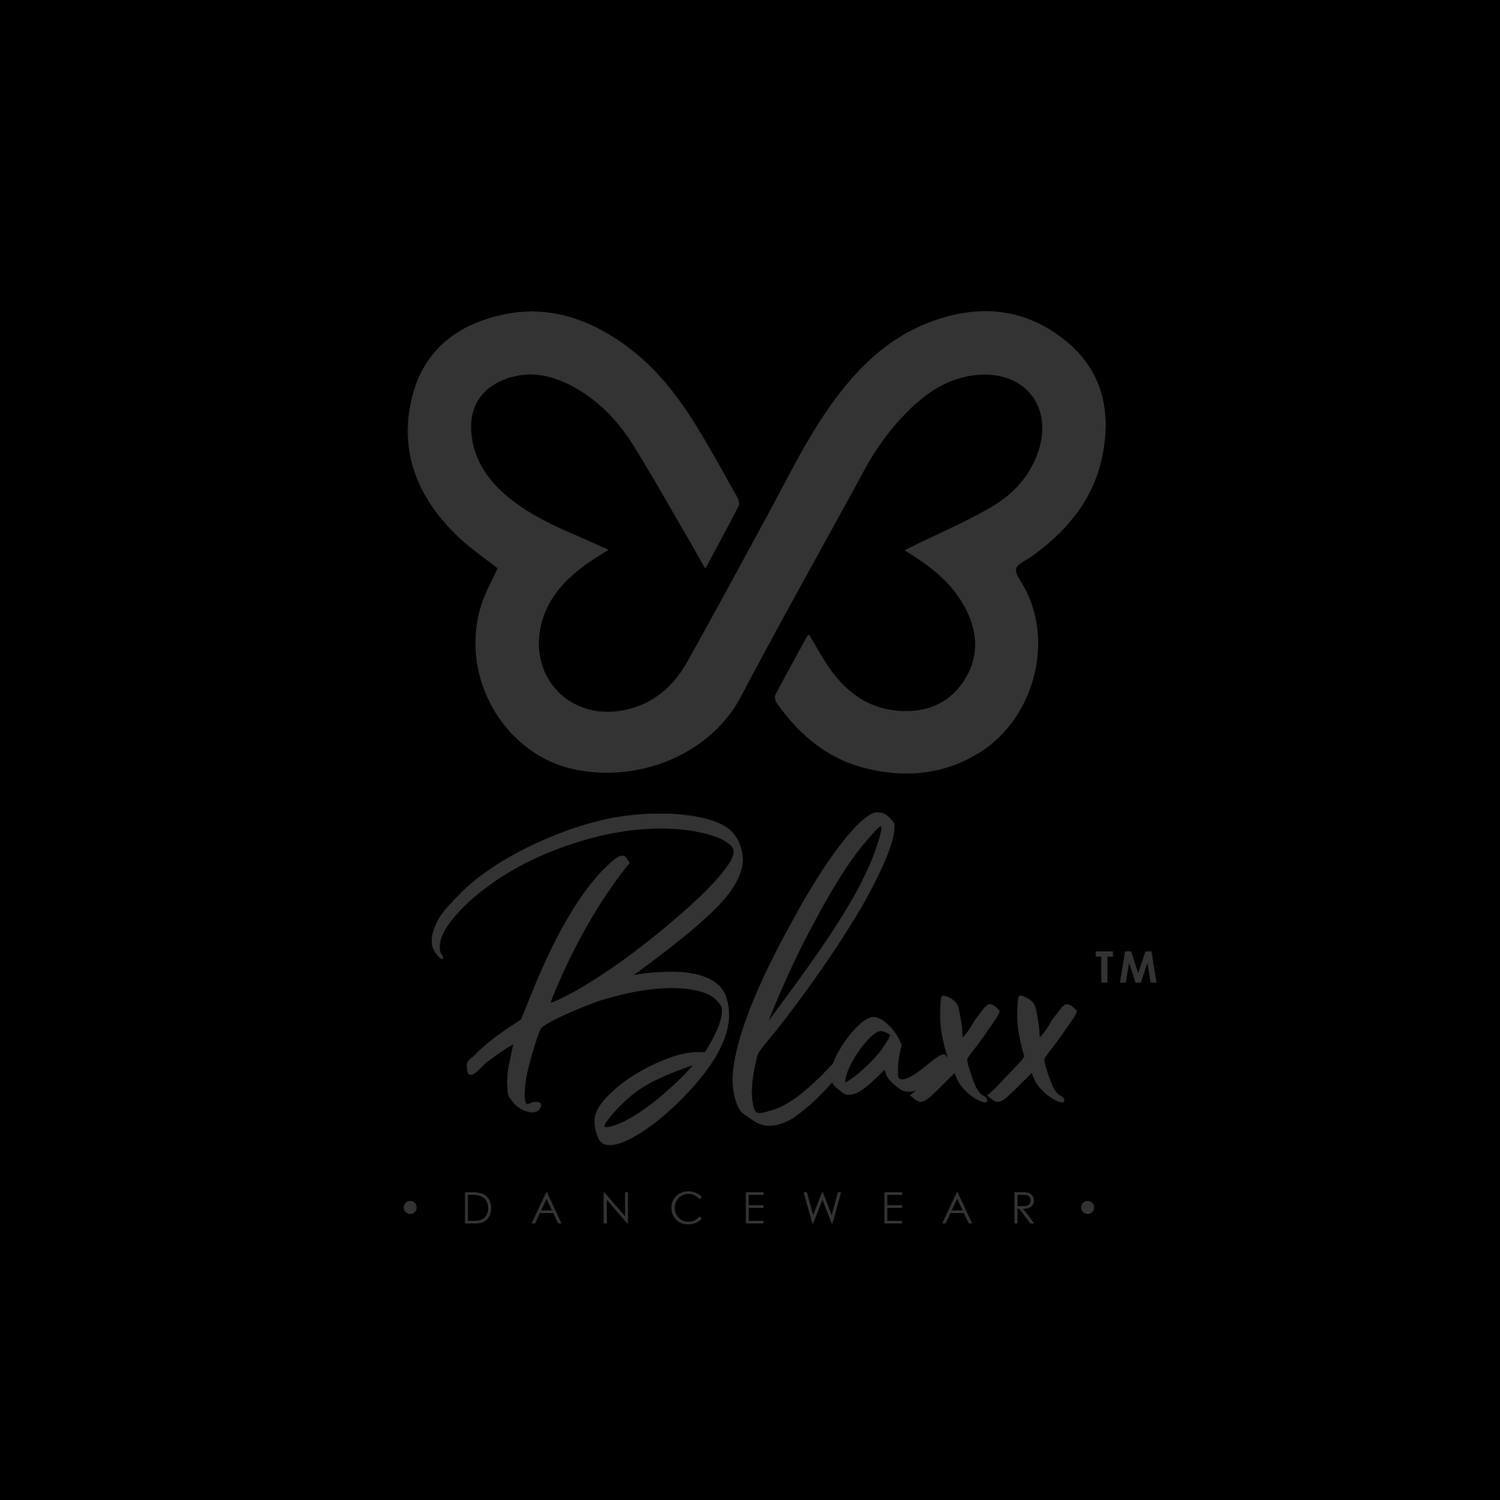 Blaxx Dancewear